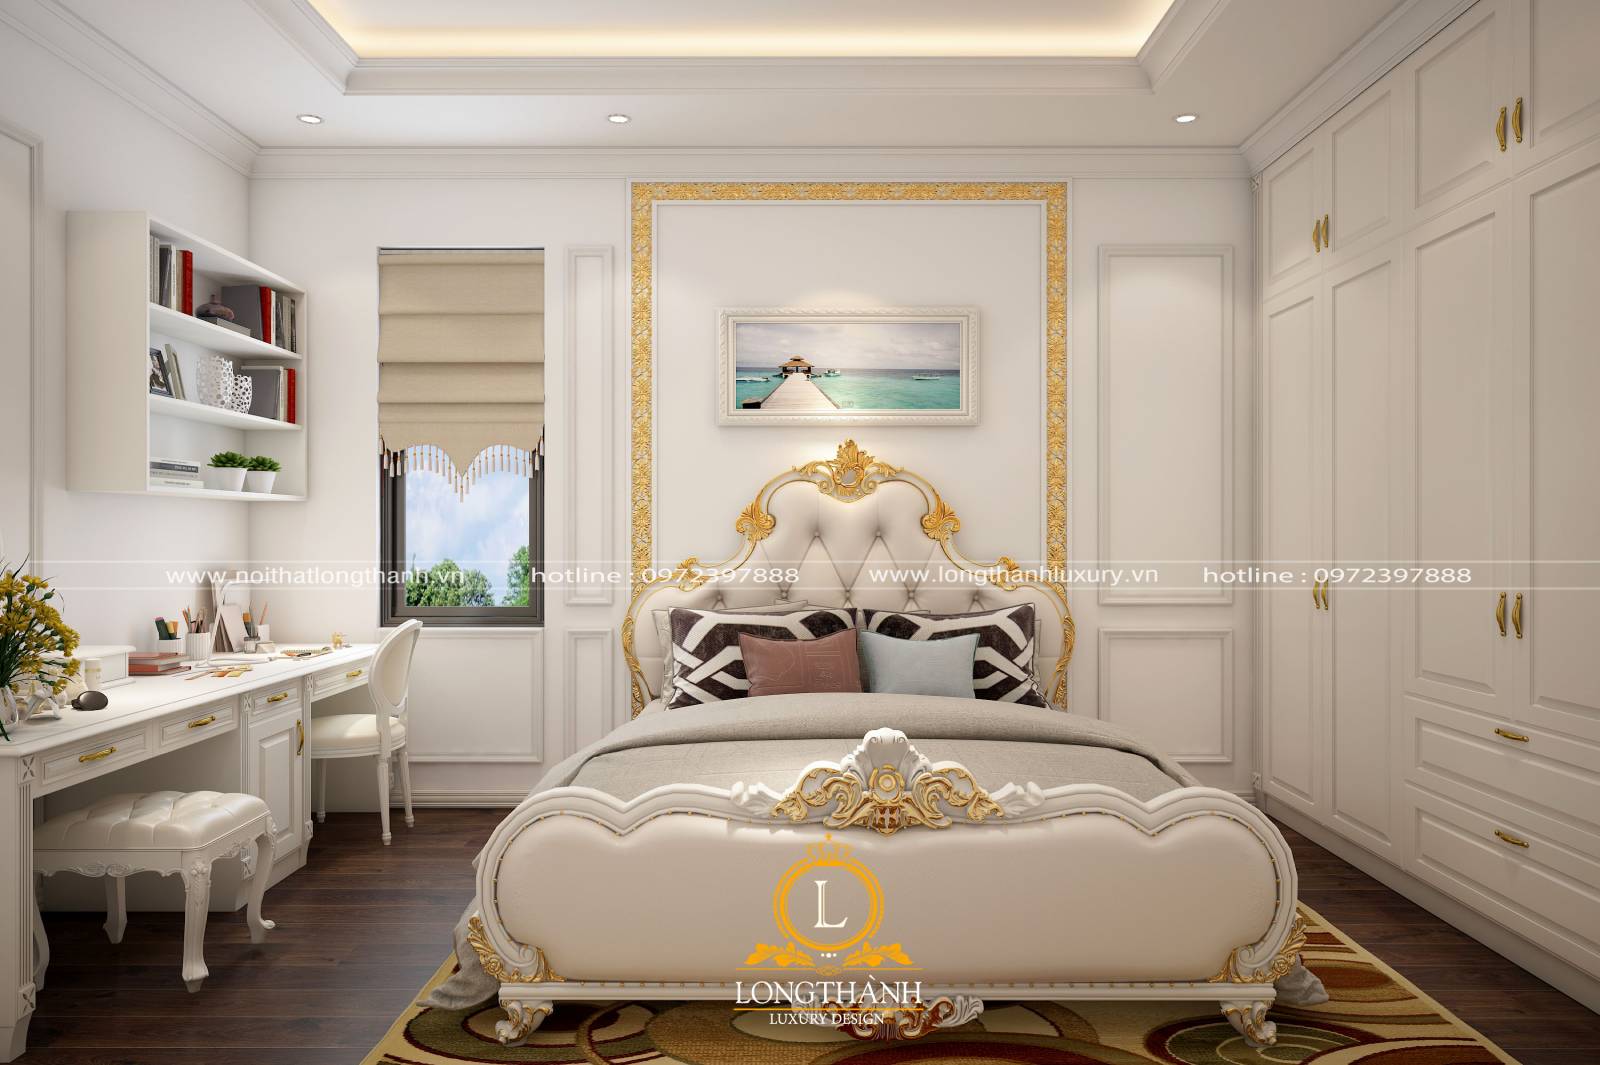 Phòng ngủ đẹp cho nữ màu trắng được trang trí độc đáo bắt mắt